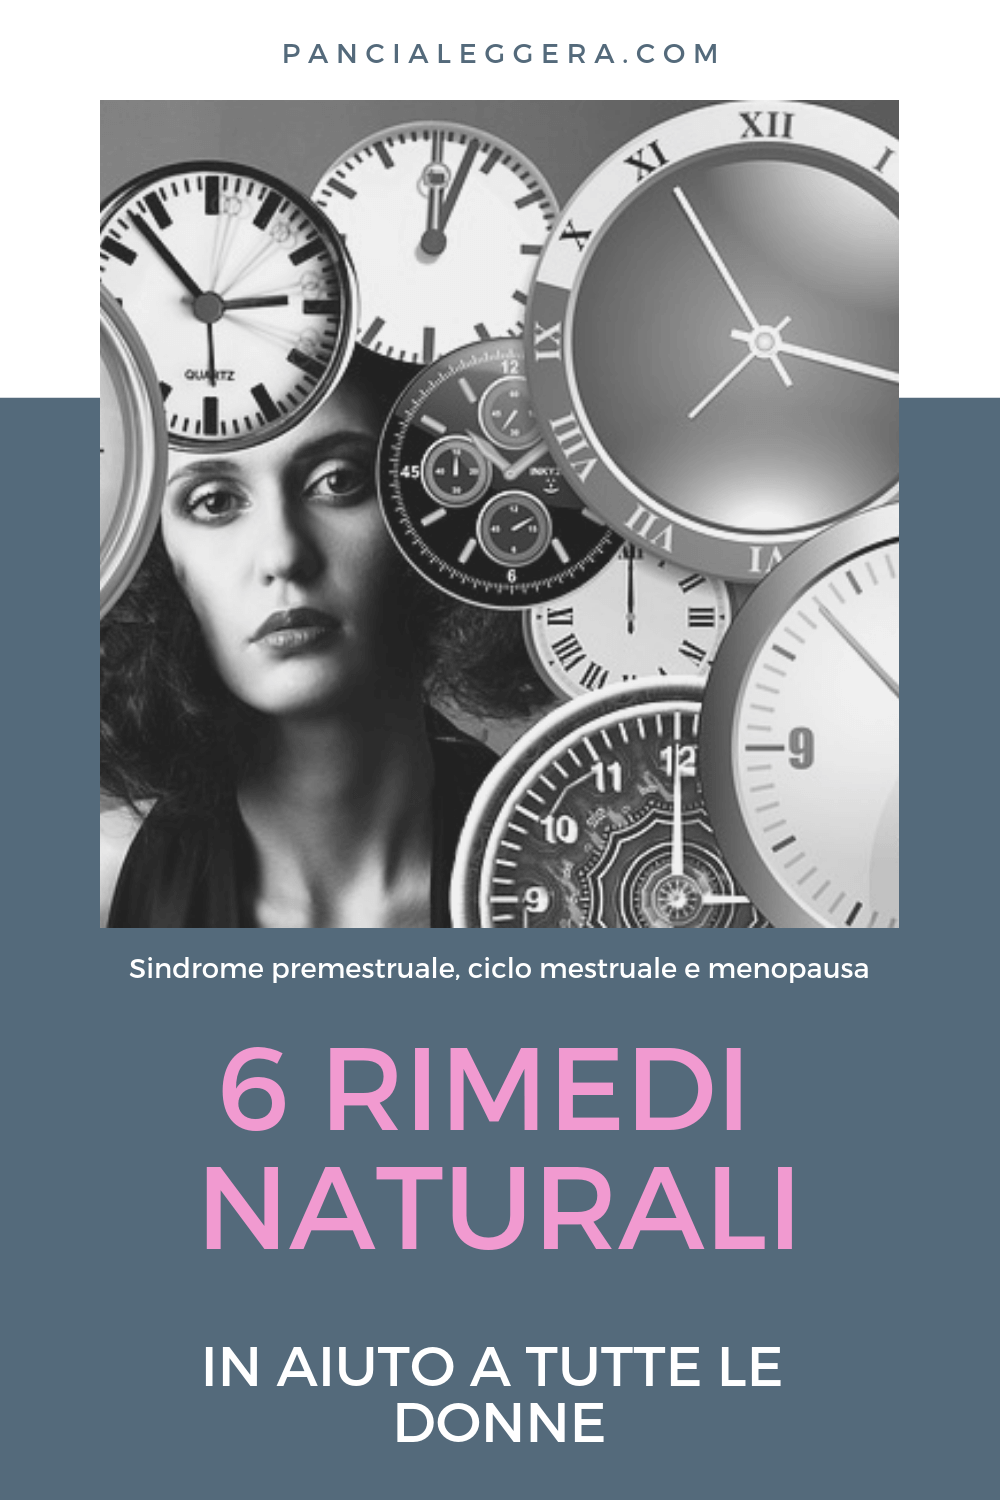 rimedi naturali sindrome premestruale ciclo mestruale menopausa